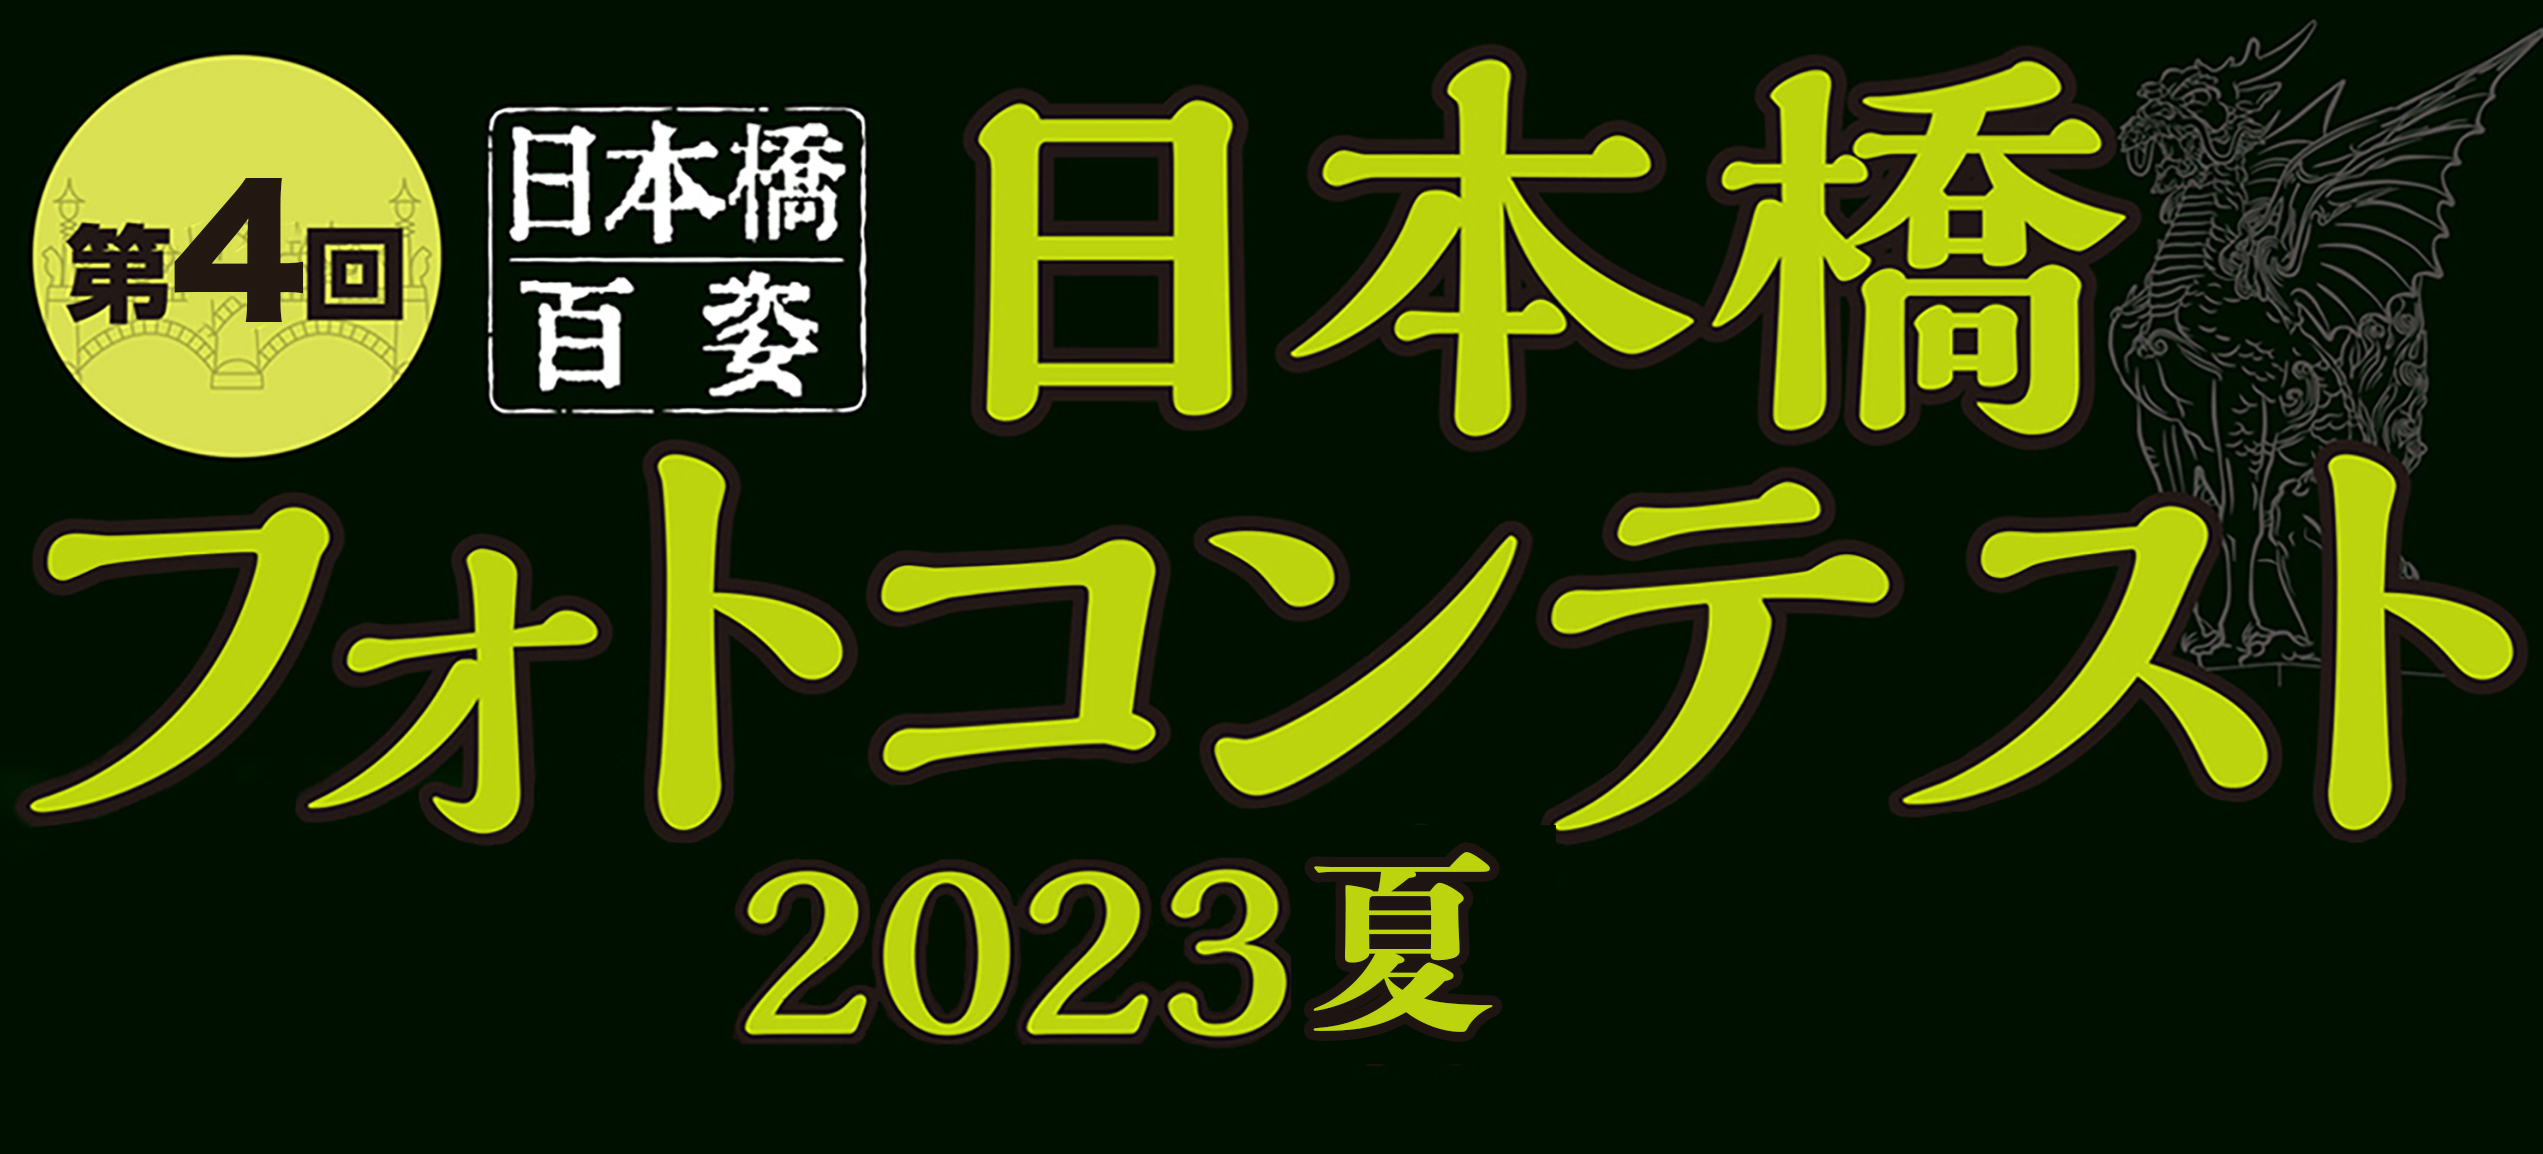 第1回 日本橋フォトコンテスト 2022秋